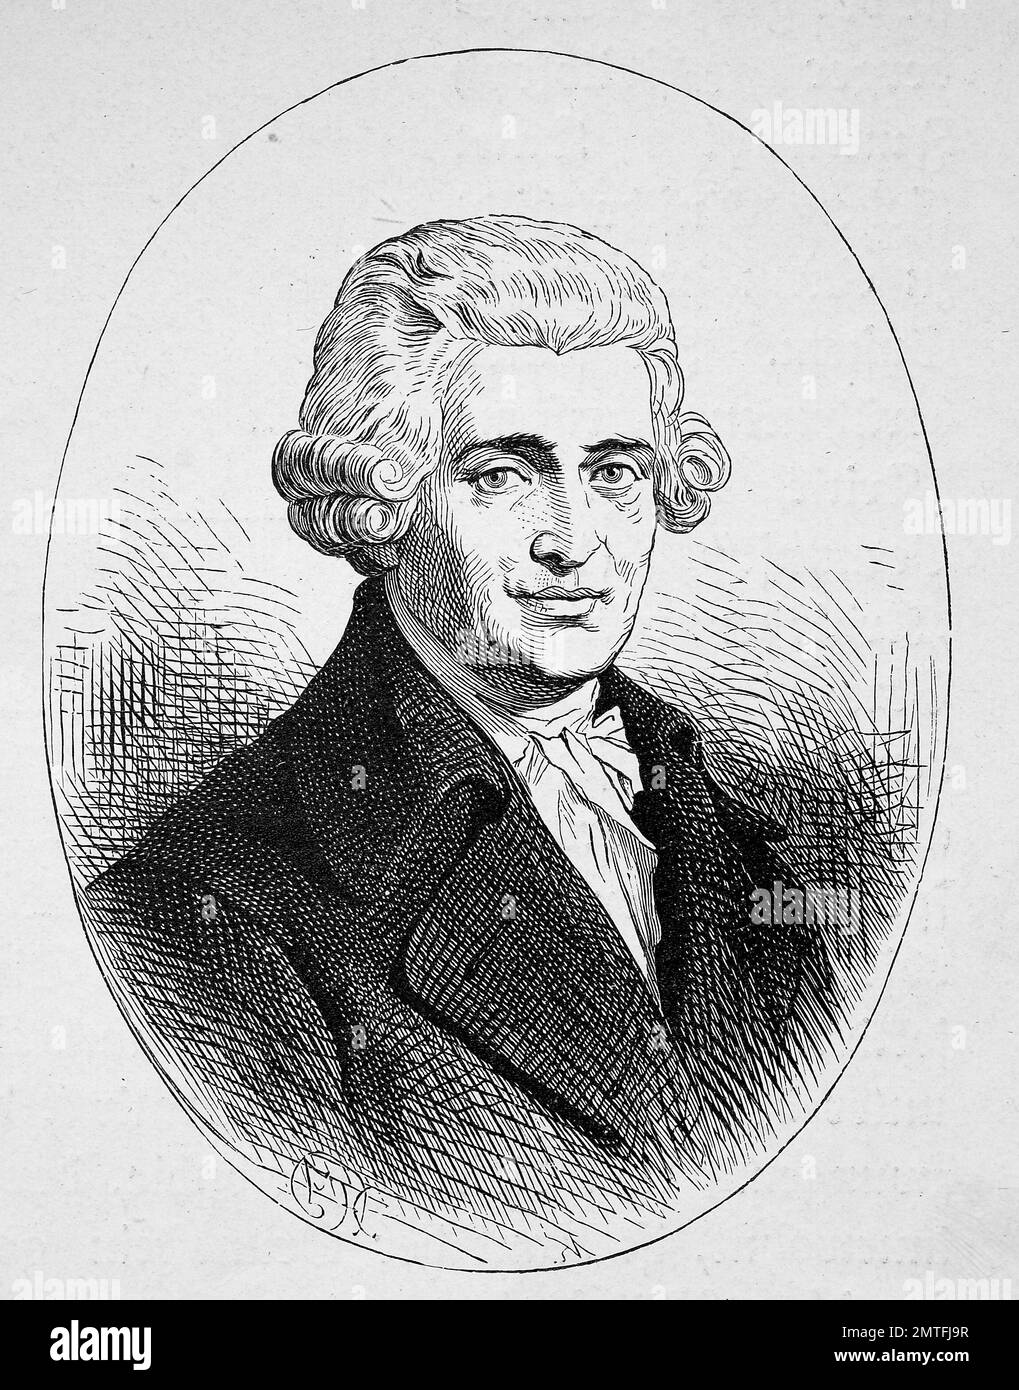 Franz Joseph Haydn, 31 mars 1732 - 31 mai 1809, est un compositeur autrichien de la période classique, l'illustration historique Banque D'Images